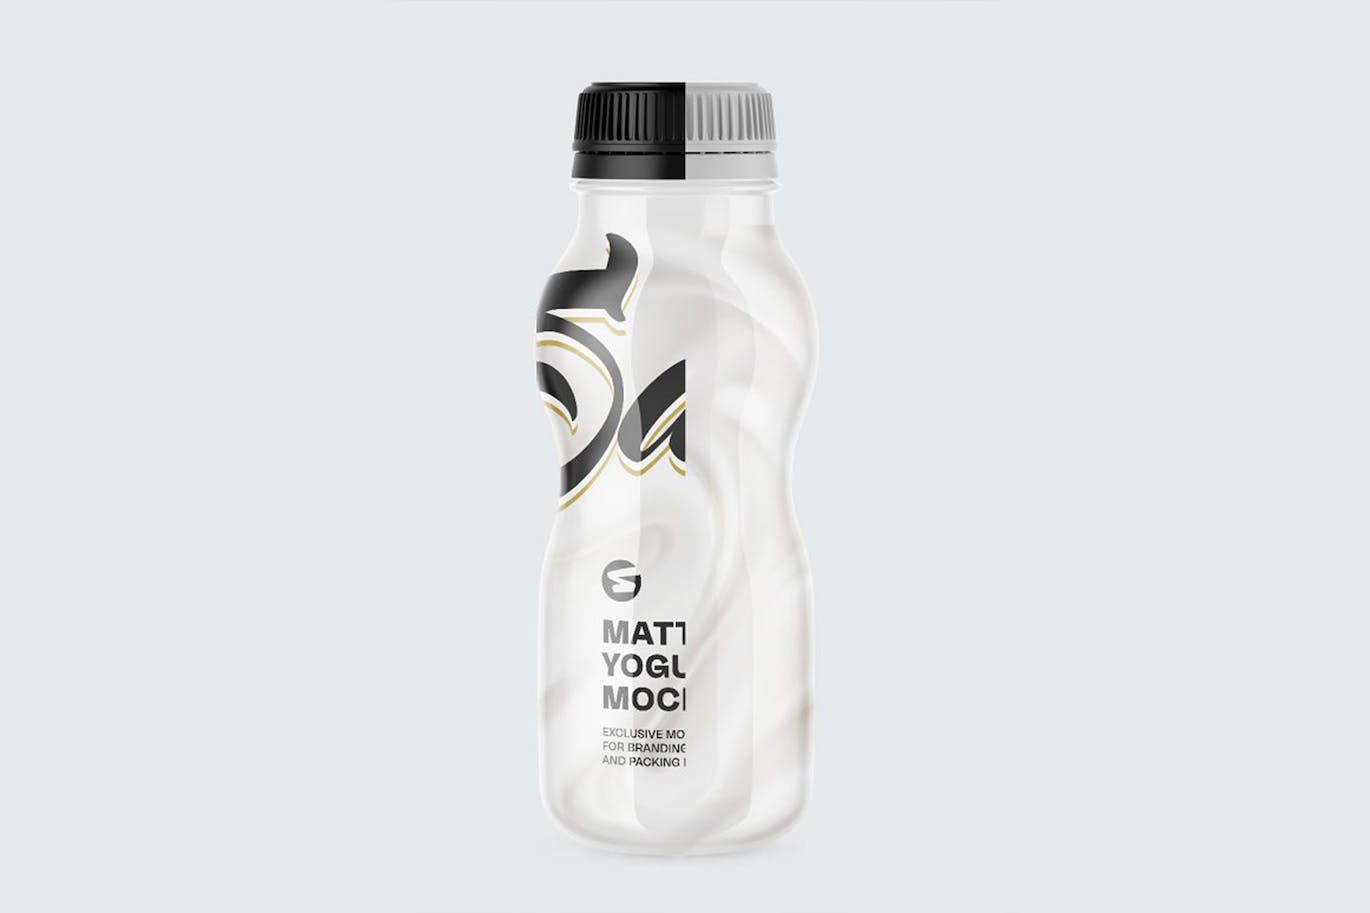 哑光酸奶瓶包装设计样机 Matte Yogurt Bottle Mockup 样机素材 第9张